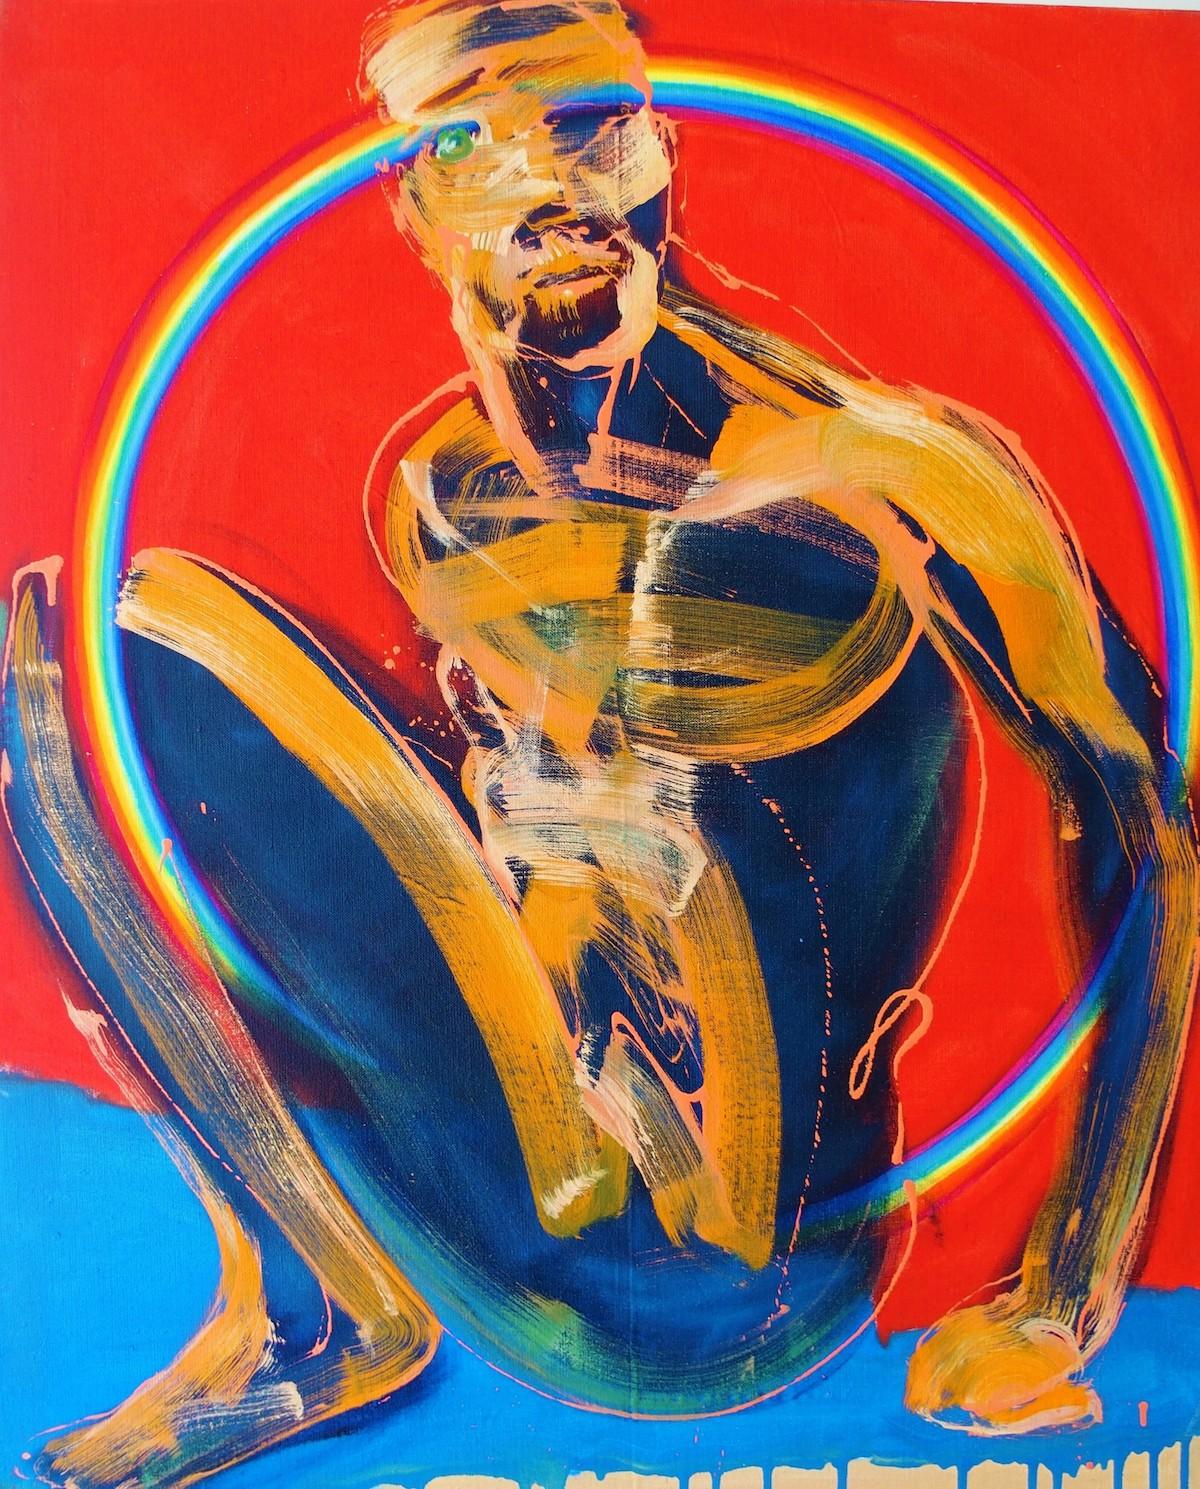 In the Sun (2018) des französischen zeitgenössischen Künstlers Christophe Dupety. Öl auf Leinwand, 100 x 81 cm.
In seiner Serie Menschliche Figuren zeigt uns Christophe Dupety einige Körper, deren Aussehen eher an Schatten erinnert. Wenn die